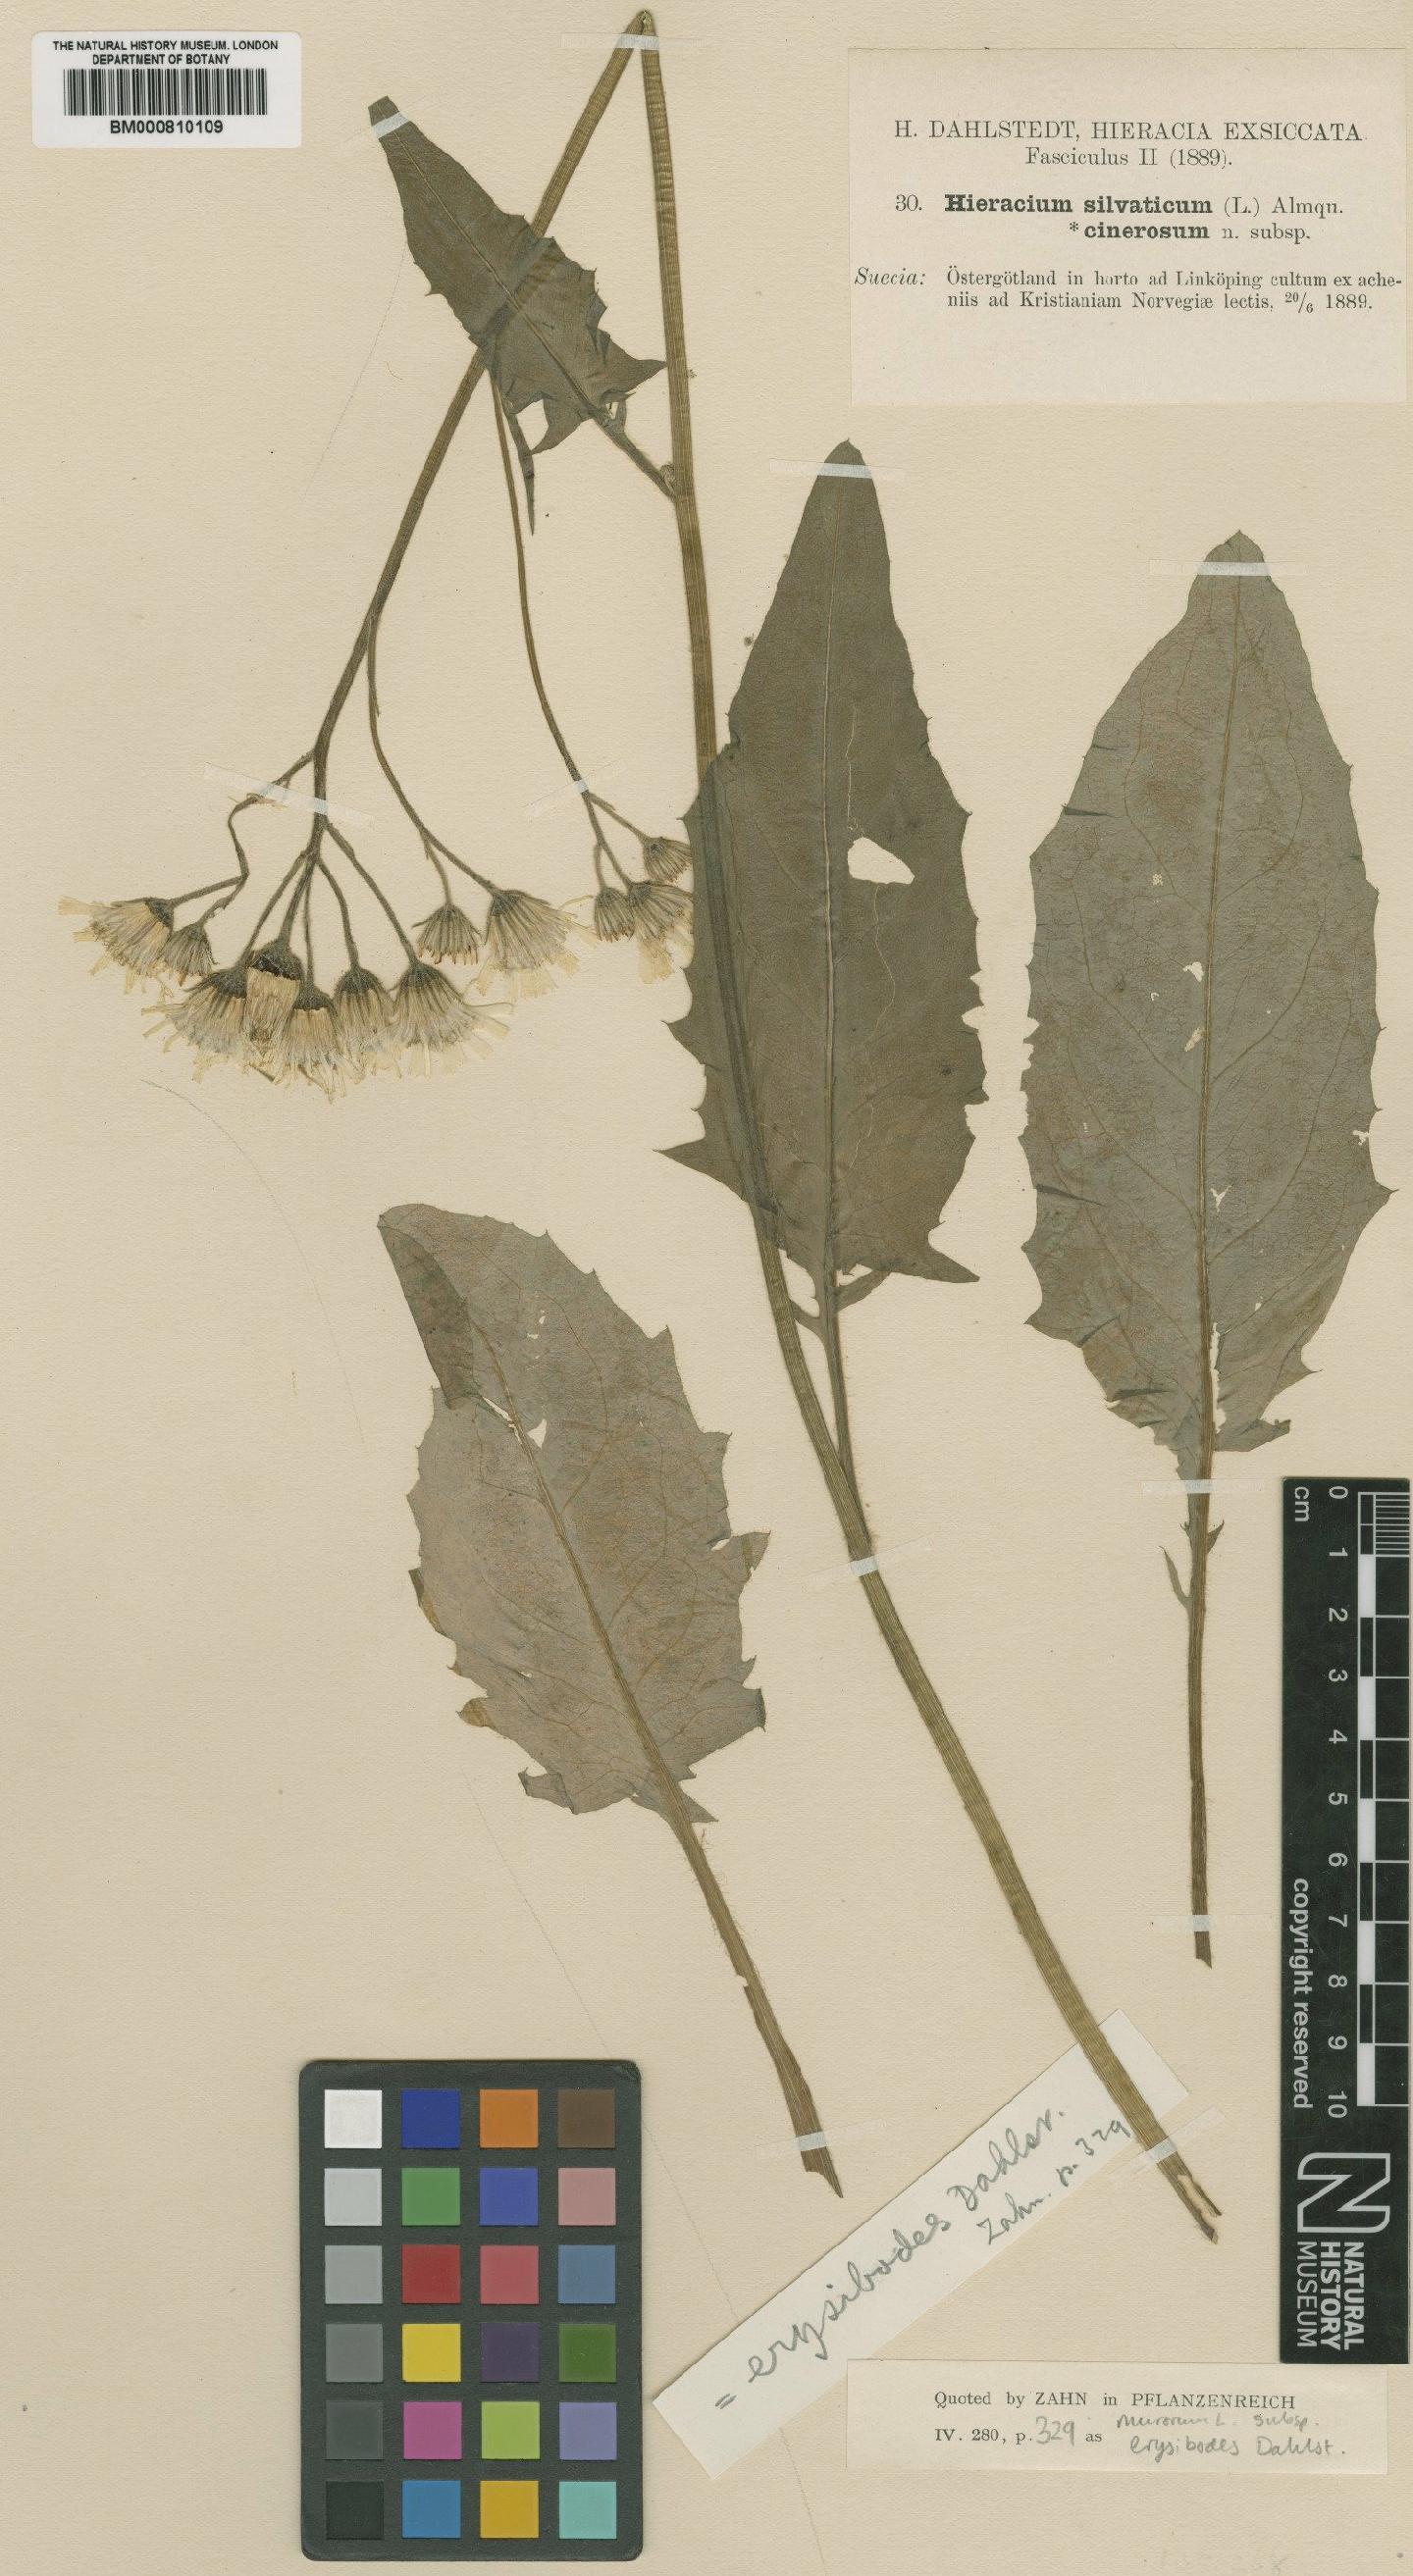 To NHMUK collection (Hieracium murorum subsp. erysibodes (Dahlst.) Zahn; TYPE; NHMUK:ecatalogue:2422224)